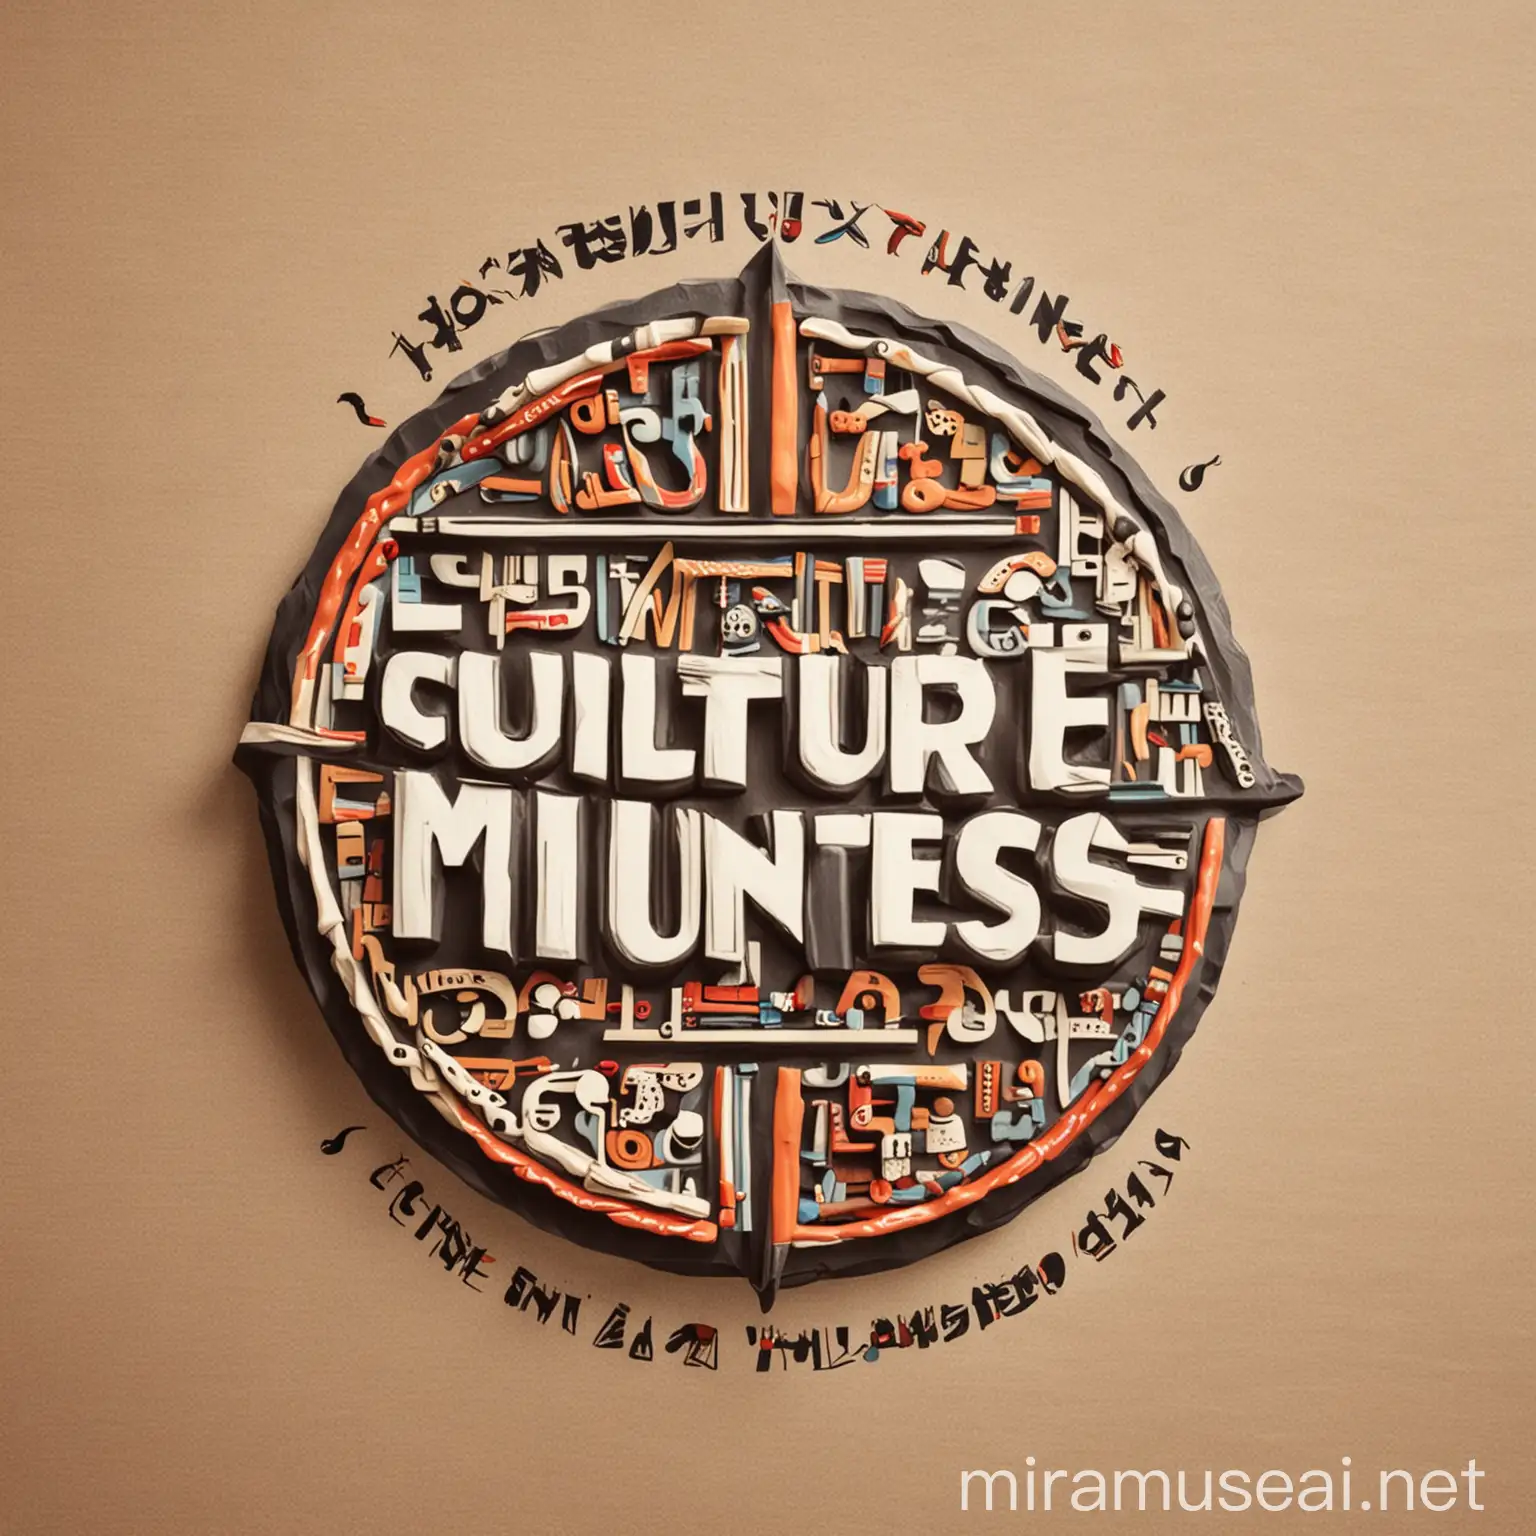 a cultural logo with culture minutes text